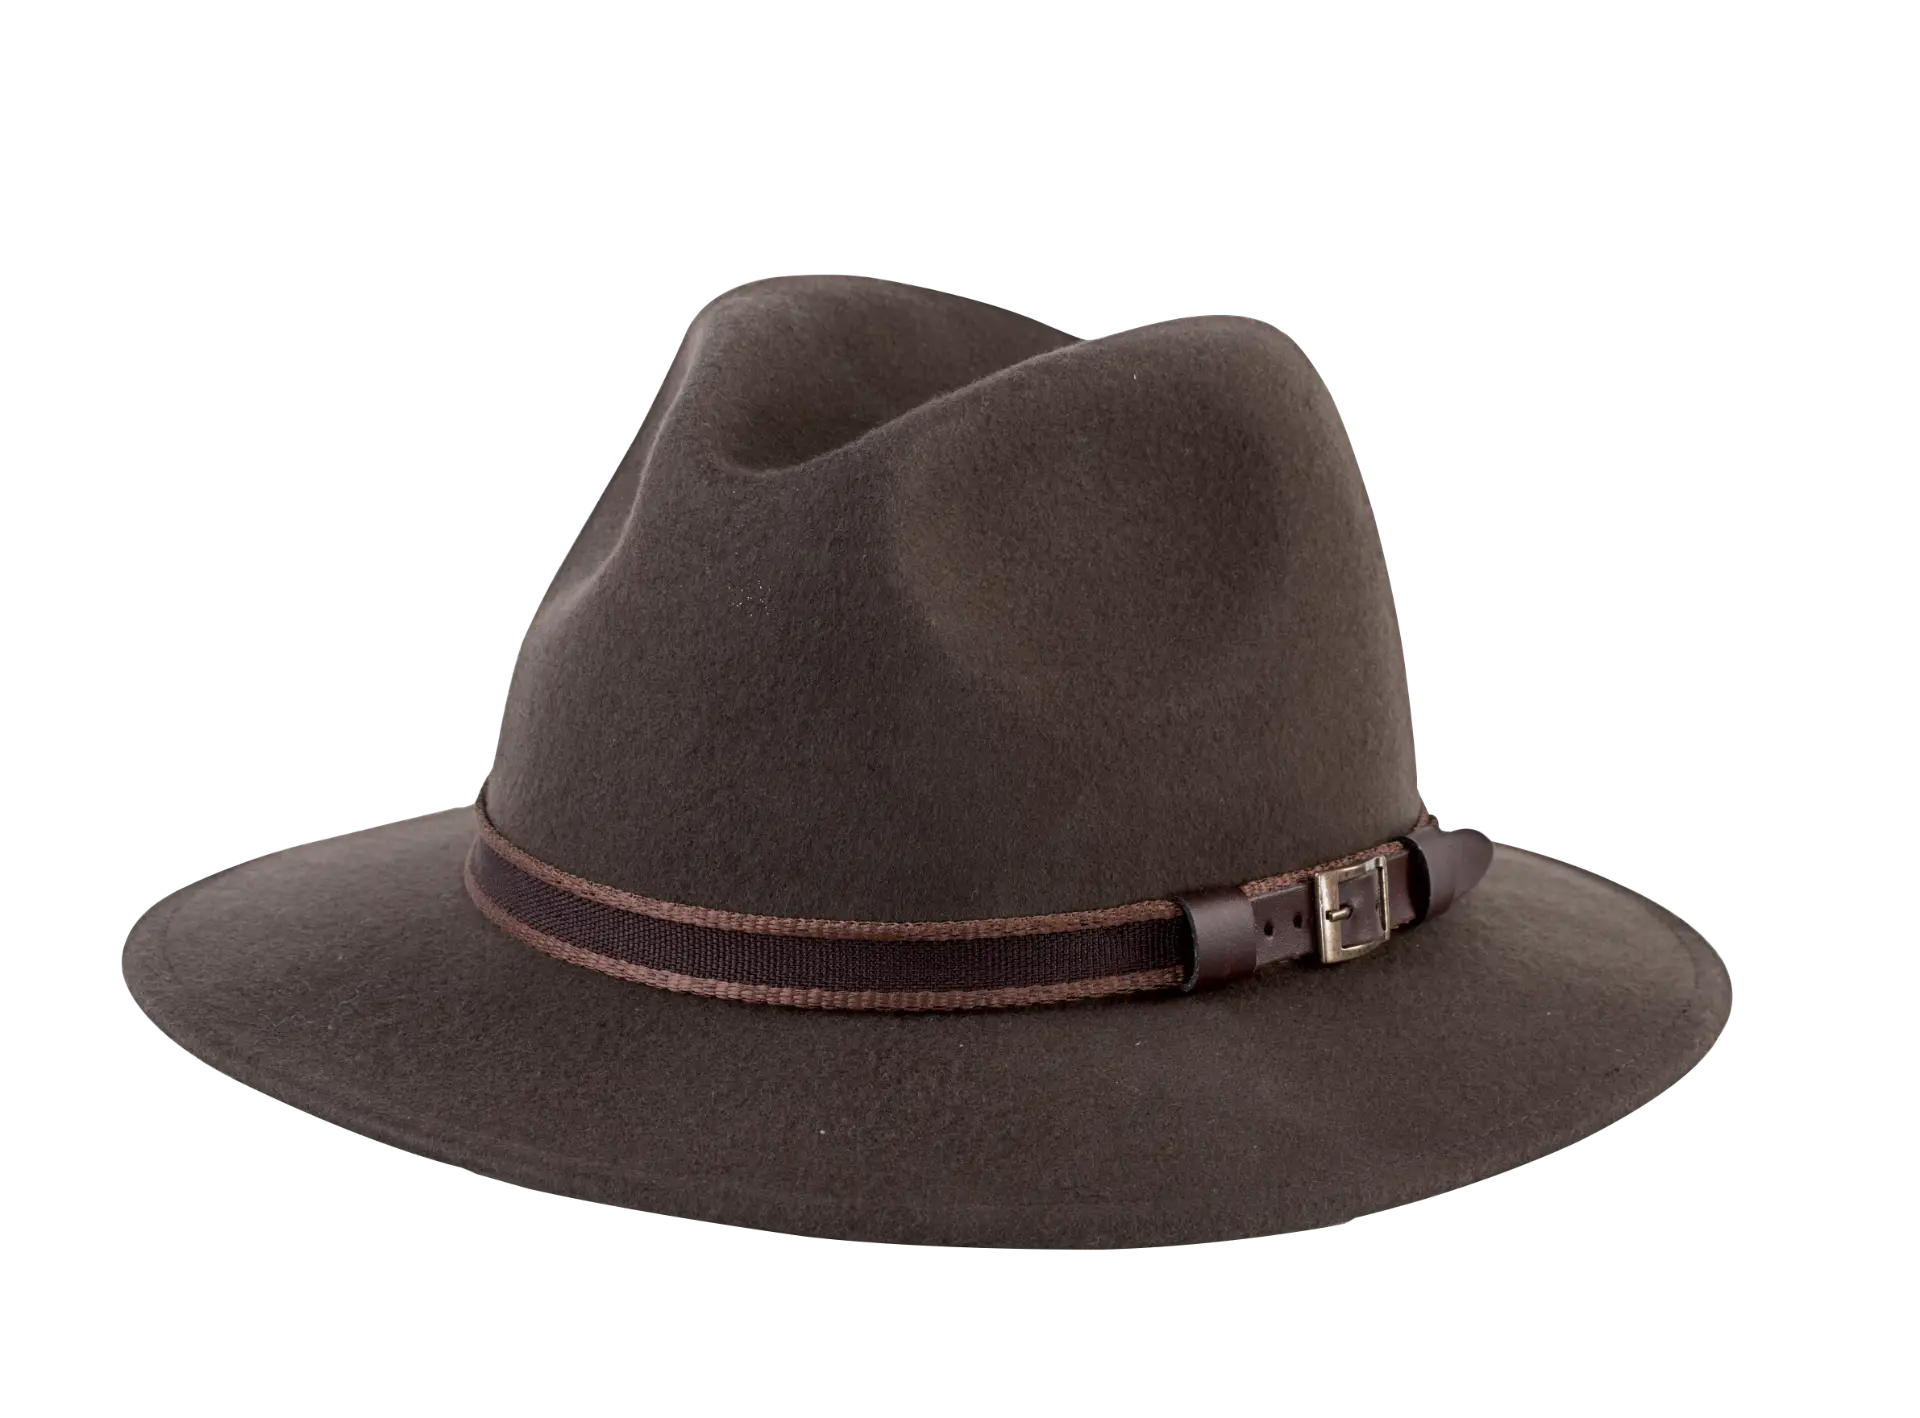 Sombrero tipo Spiro - Comprar en Galvitec